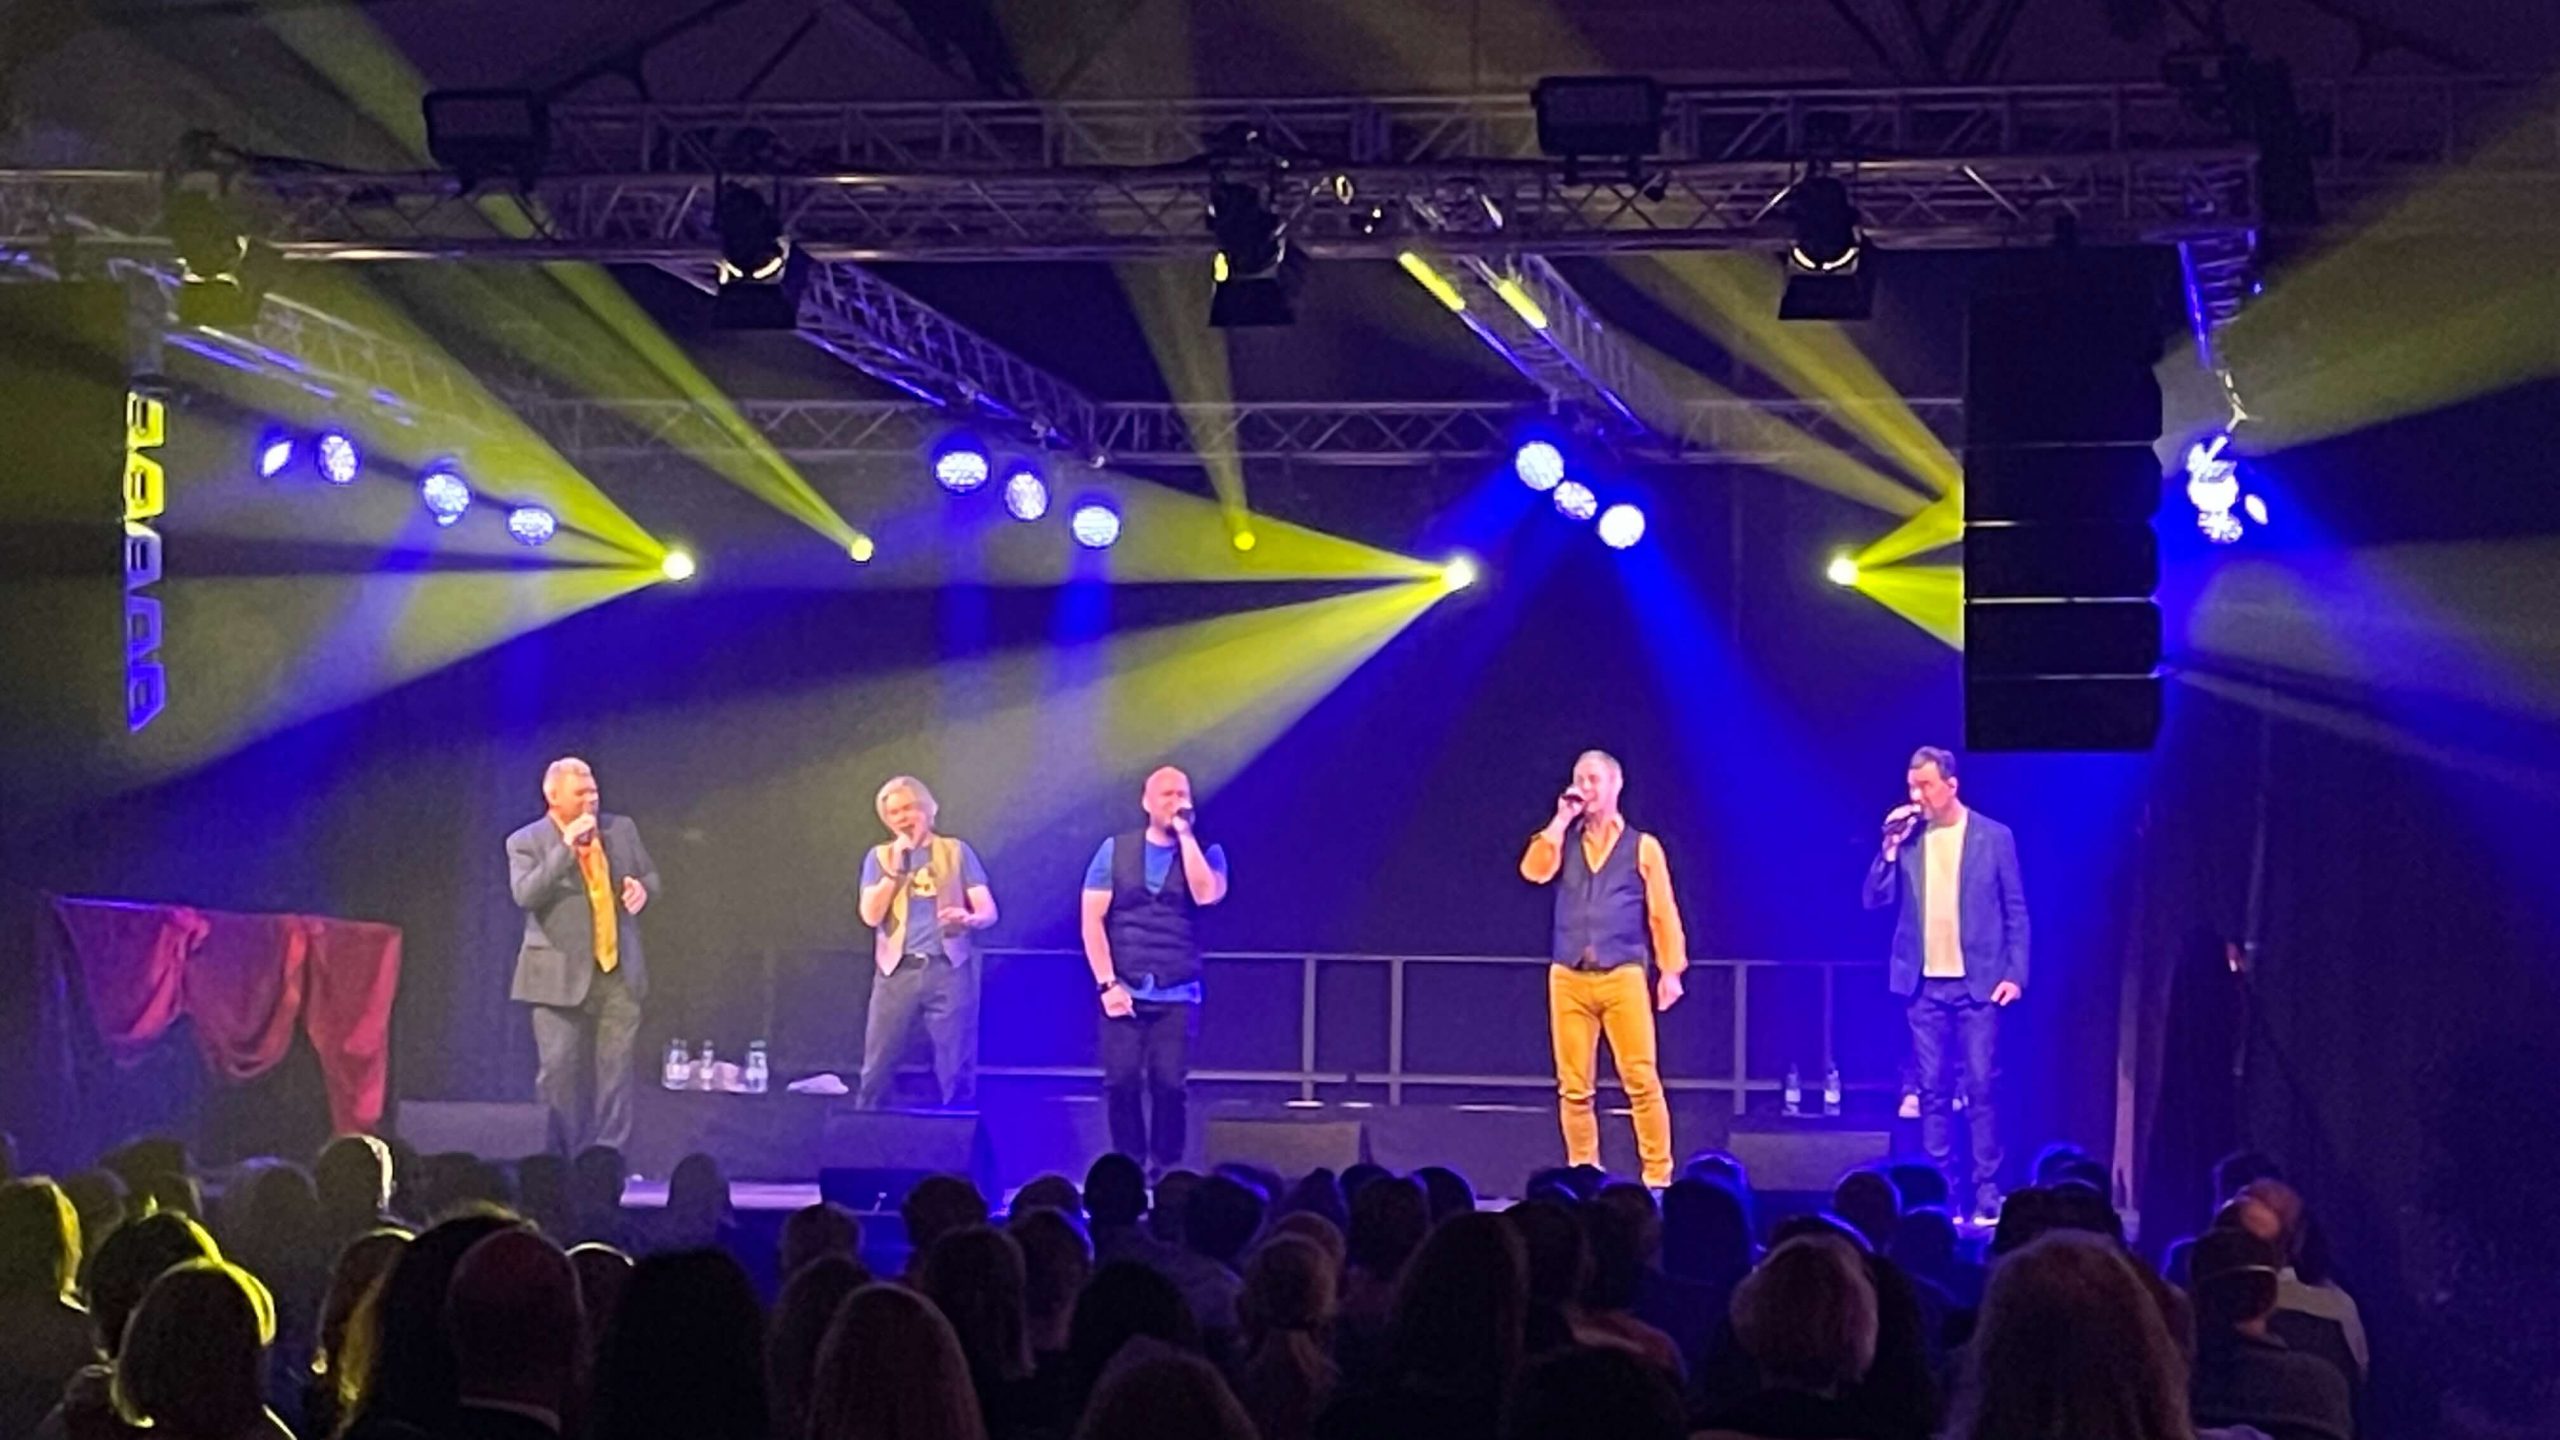 Lichttechnik auf einer Bühne mit fünf singenden Männern